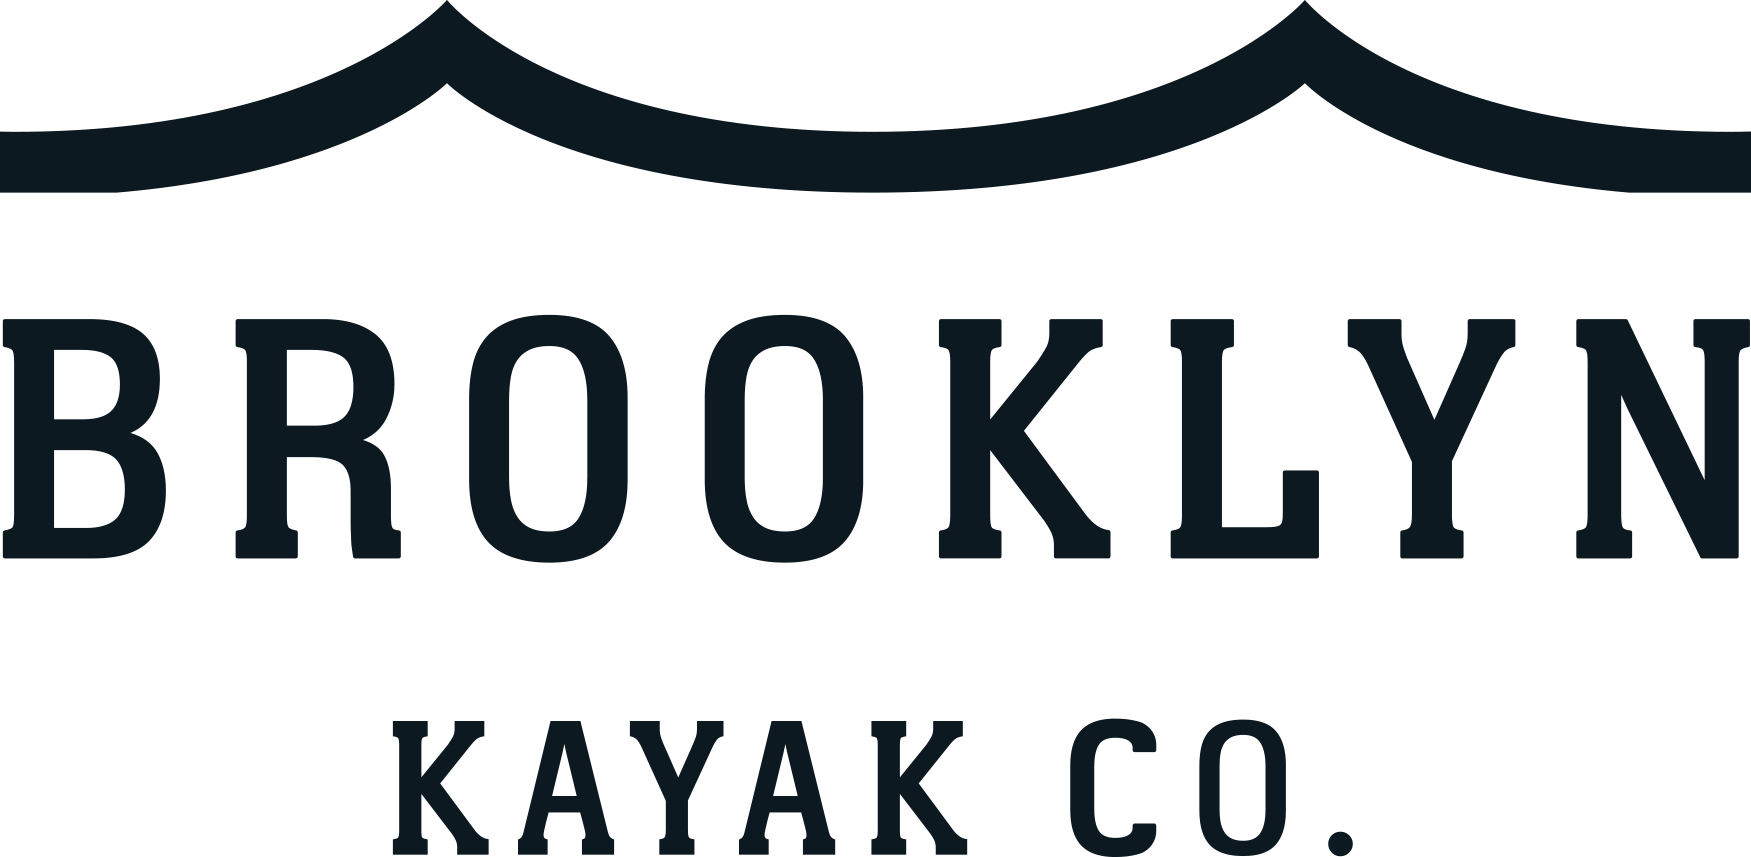 BK Kayak Corp Product Reviews